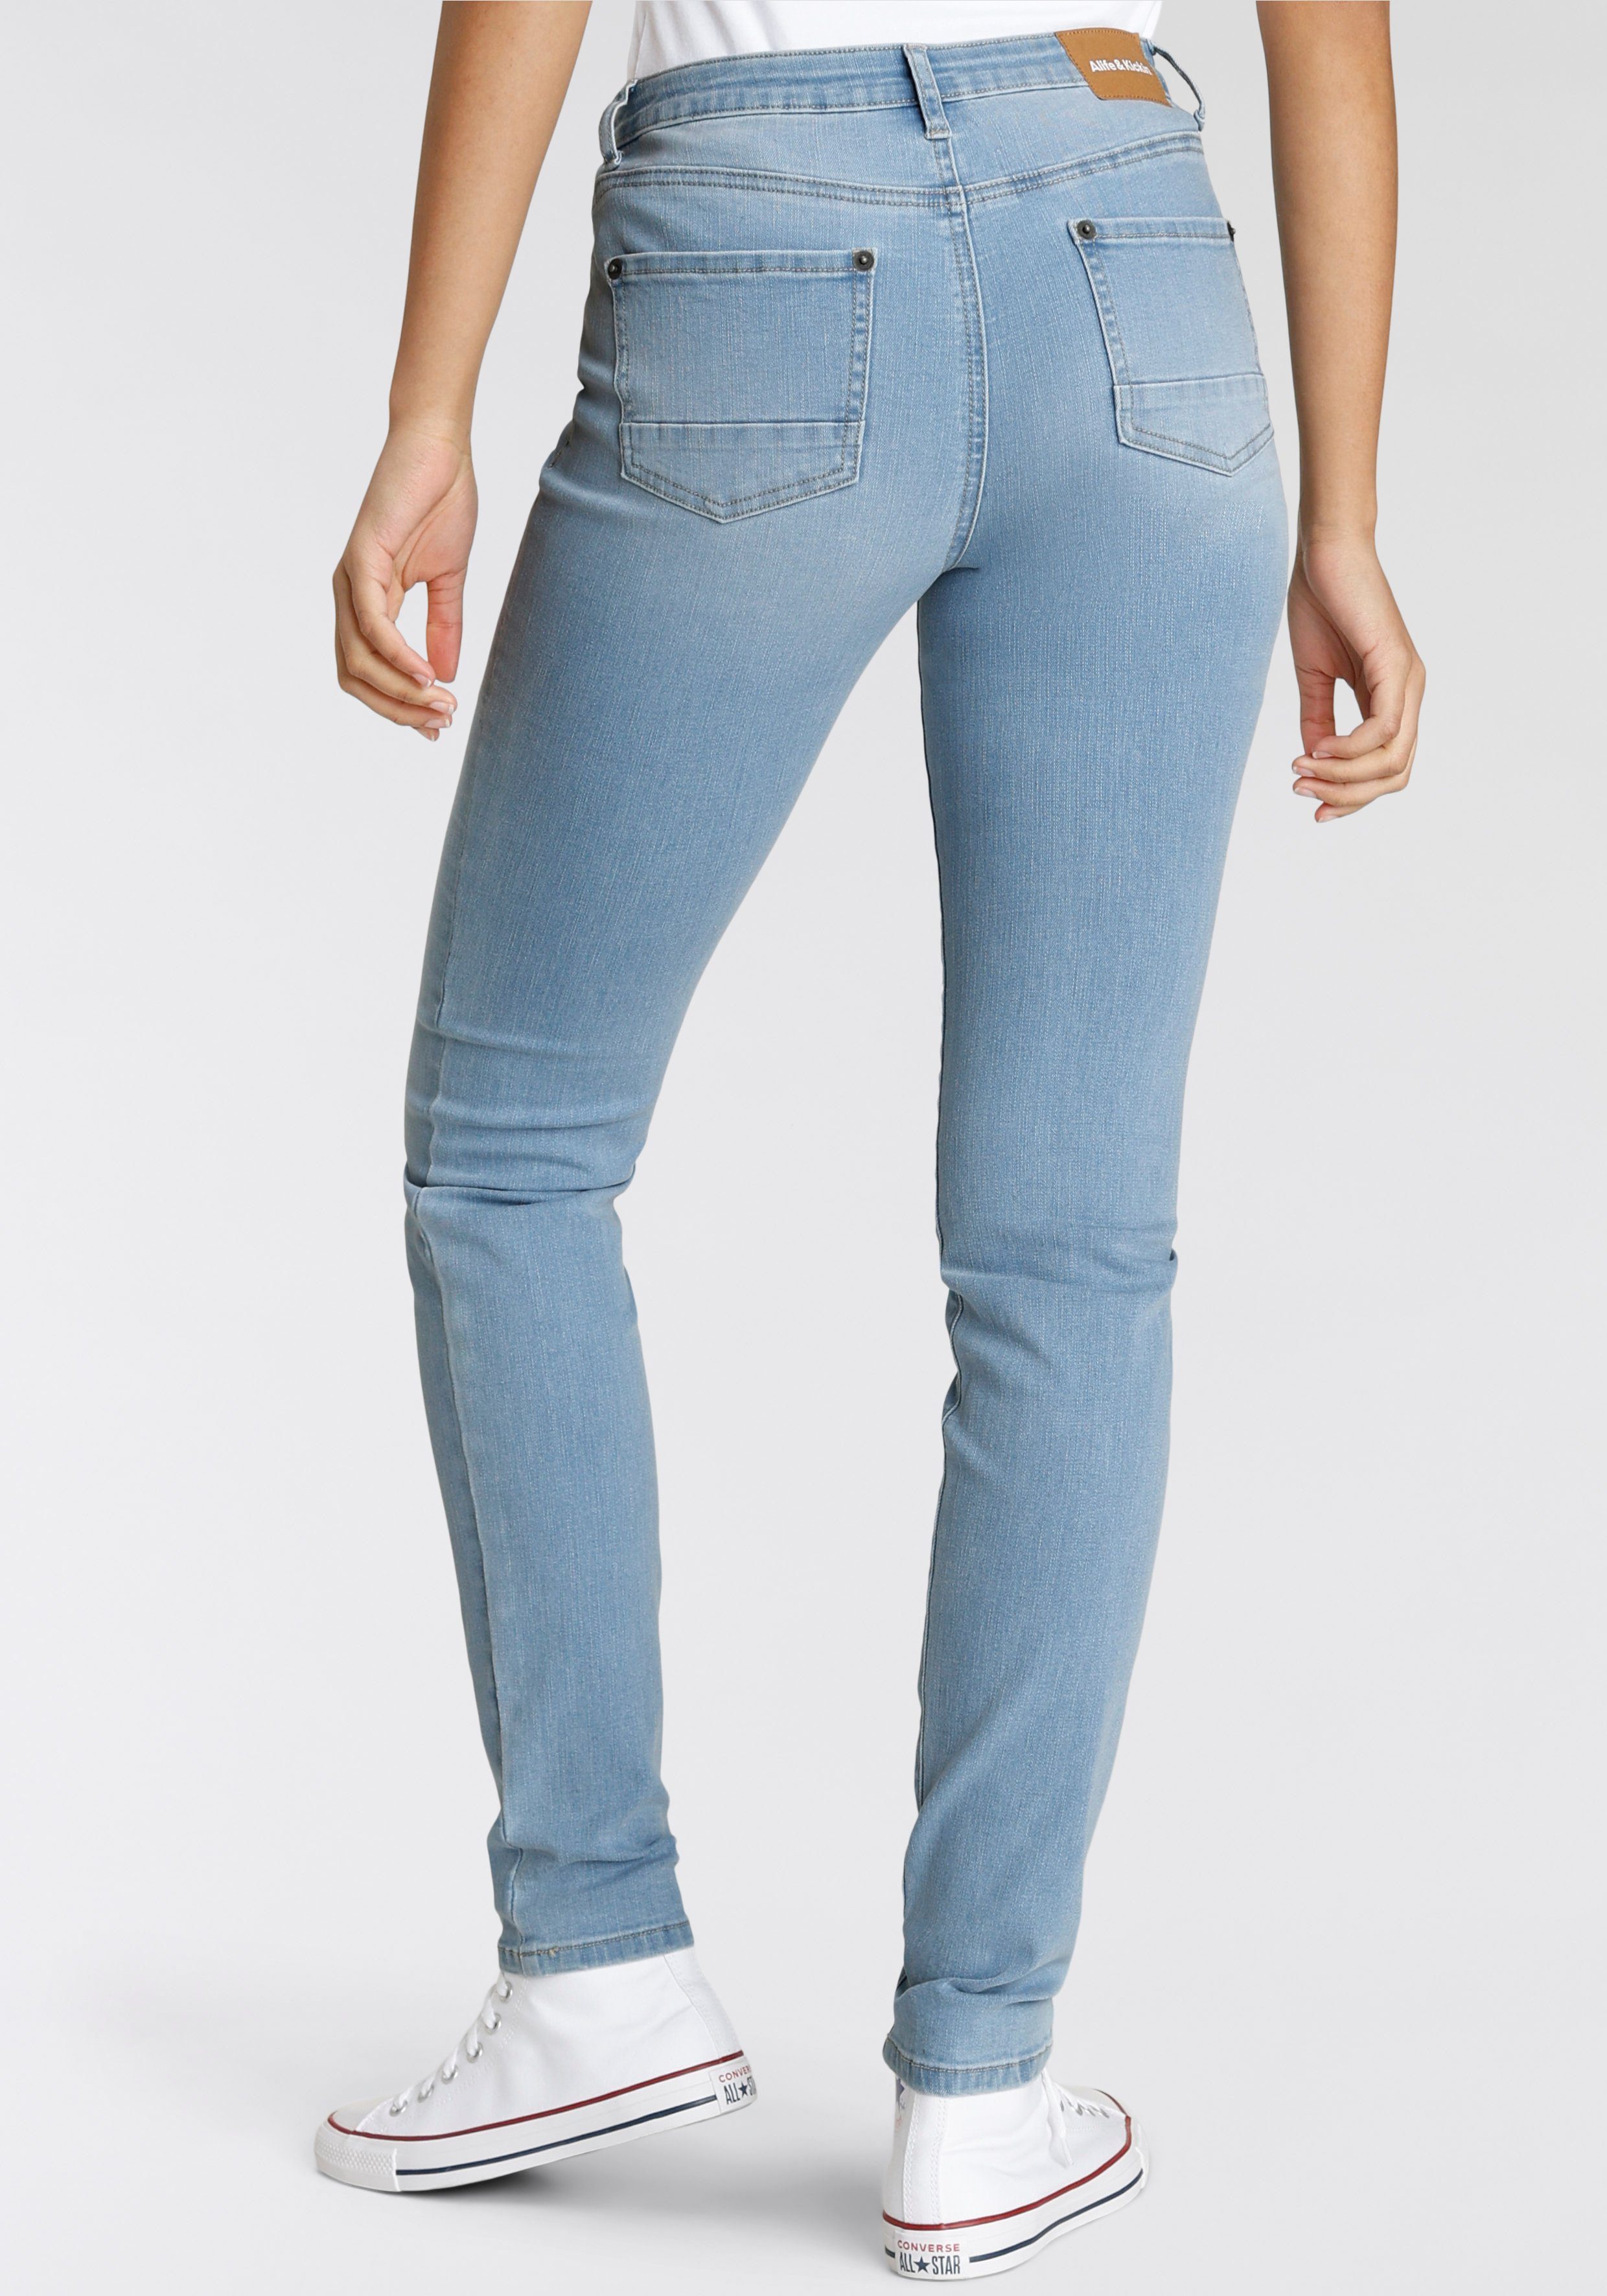 used NEUE NolaAK & KOLLEKTION blue light High-waist-Jeans Slim-Fit Alife Kickin